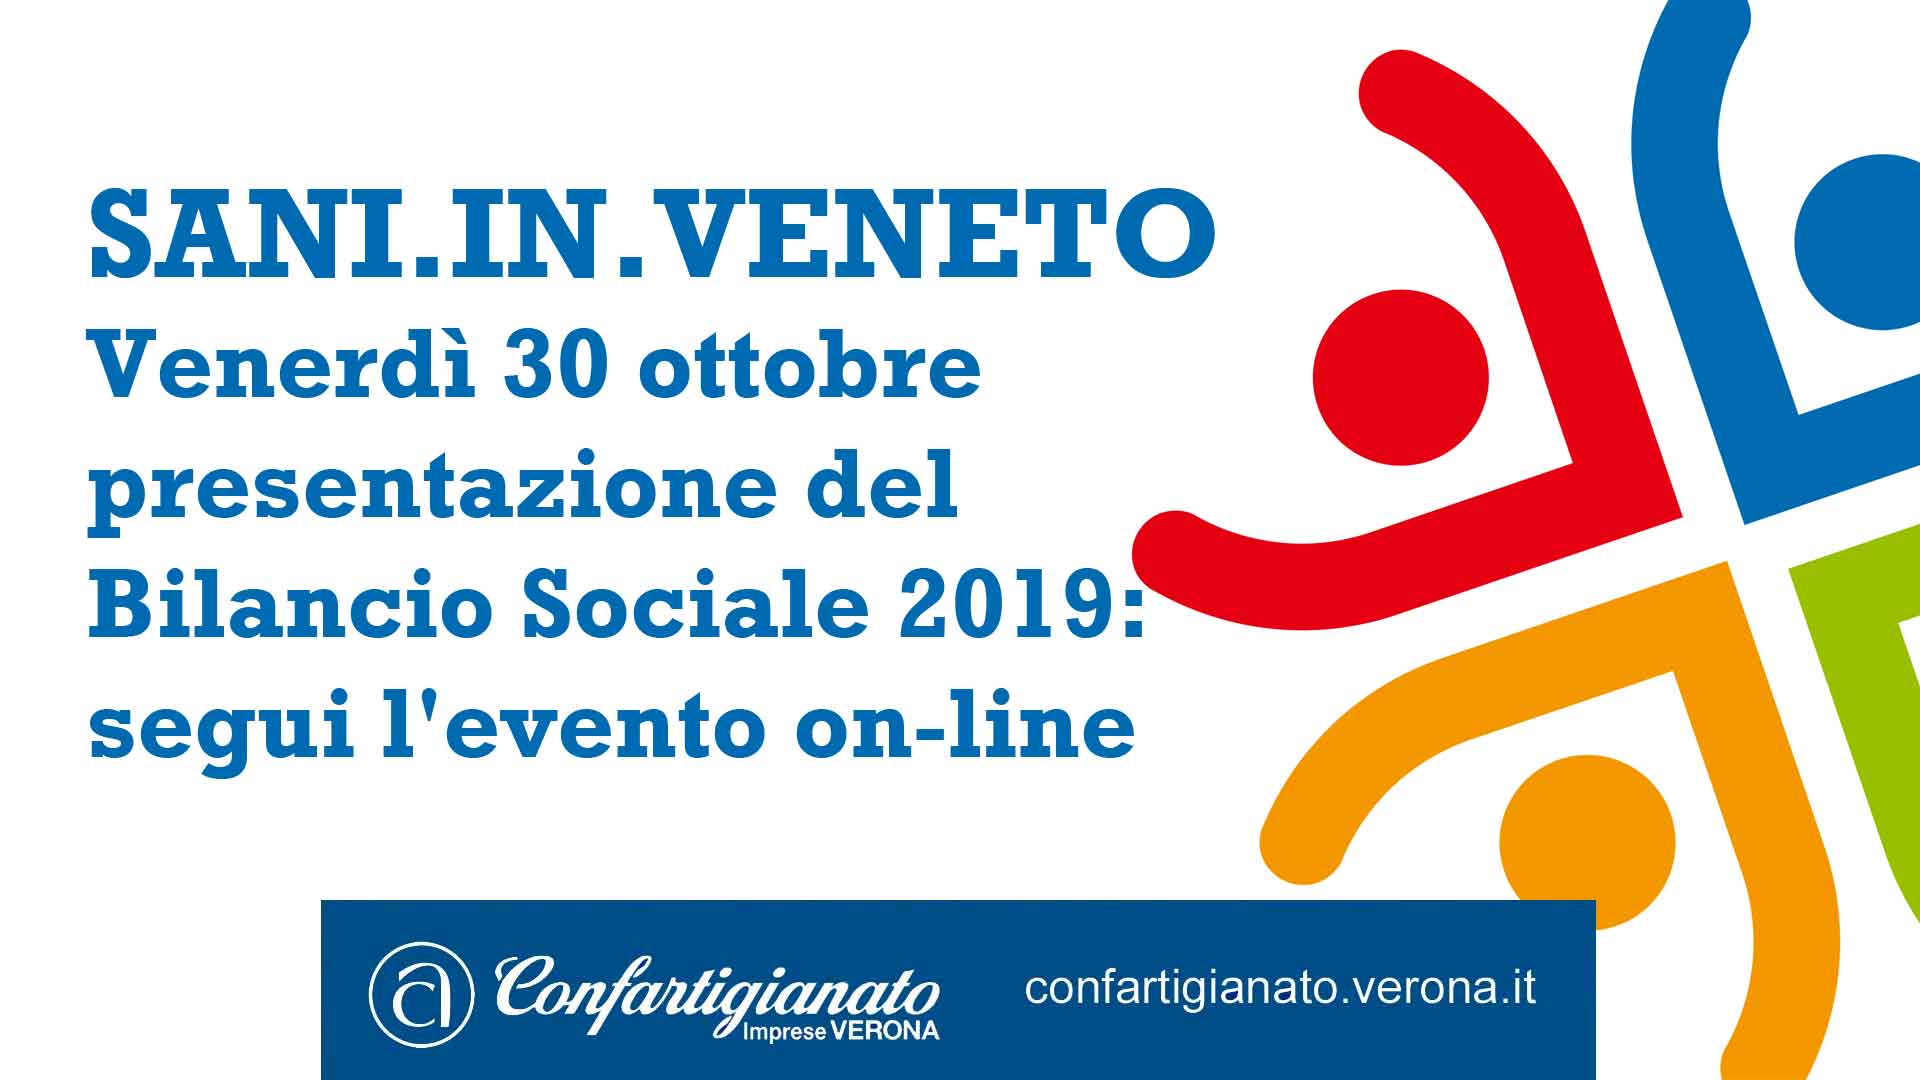 SANI.IN.VENETO – Venerdì 30 ottobre presentazione del Bilancio Sociale 2019: segui l'evento on-line